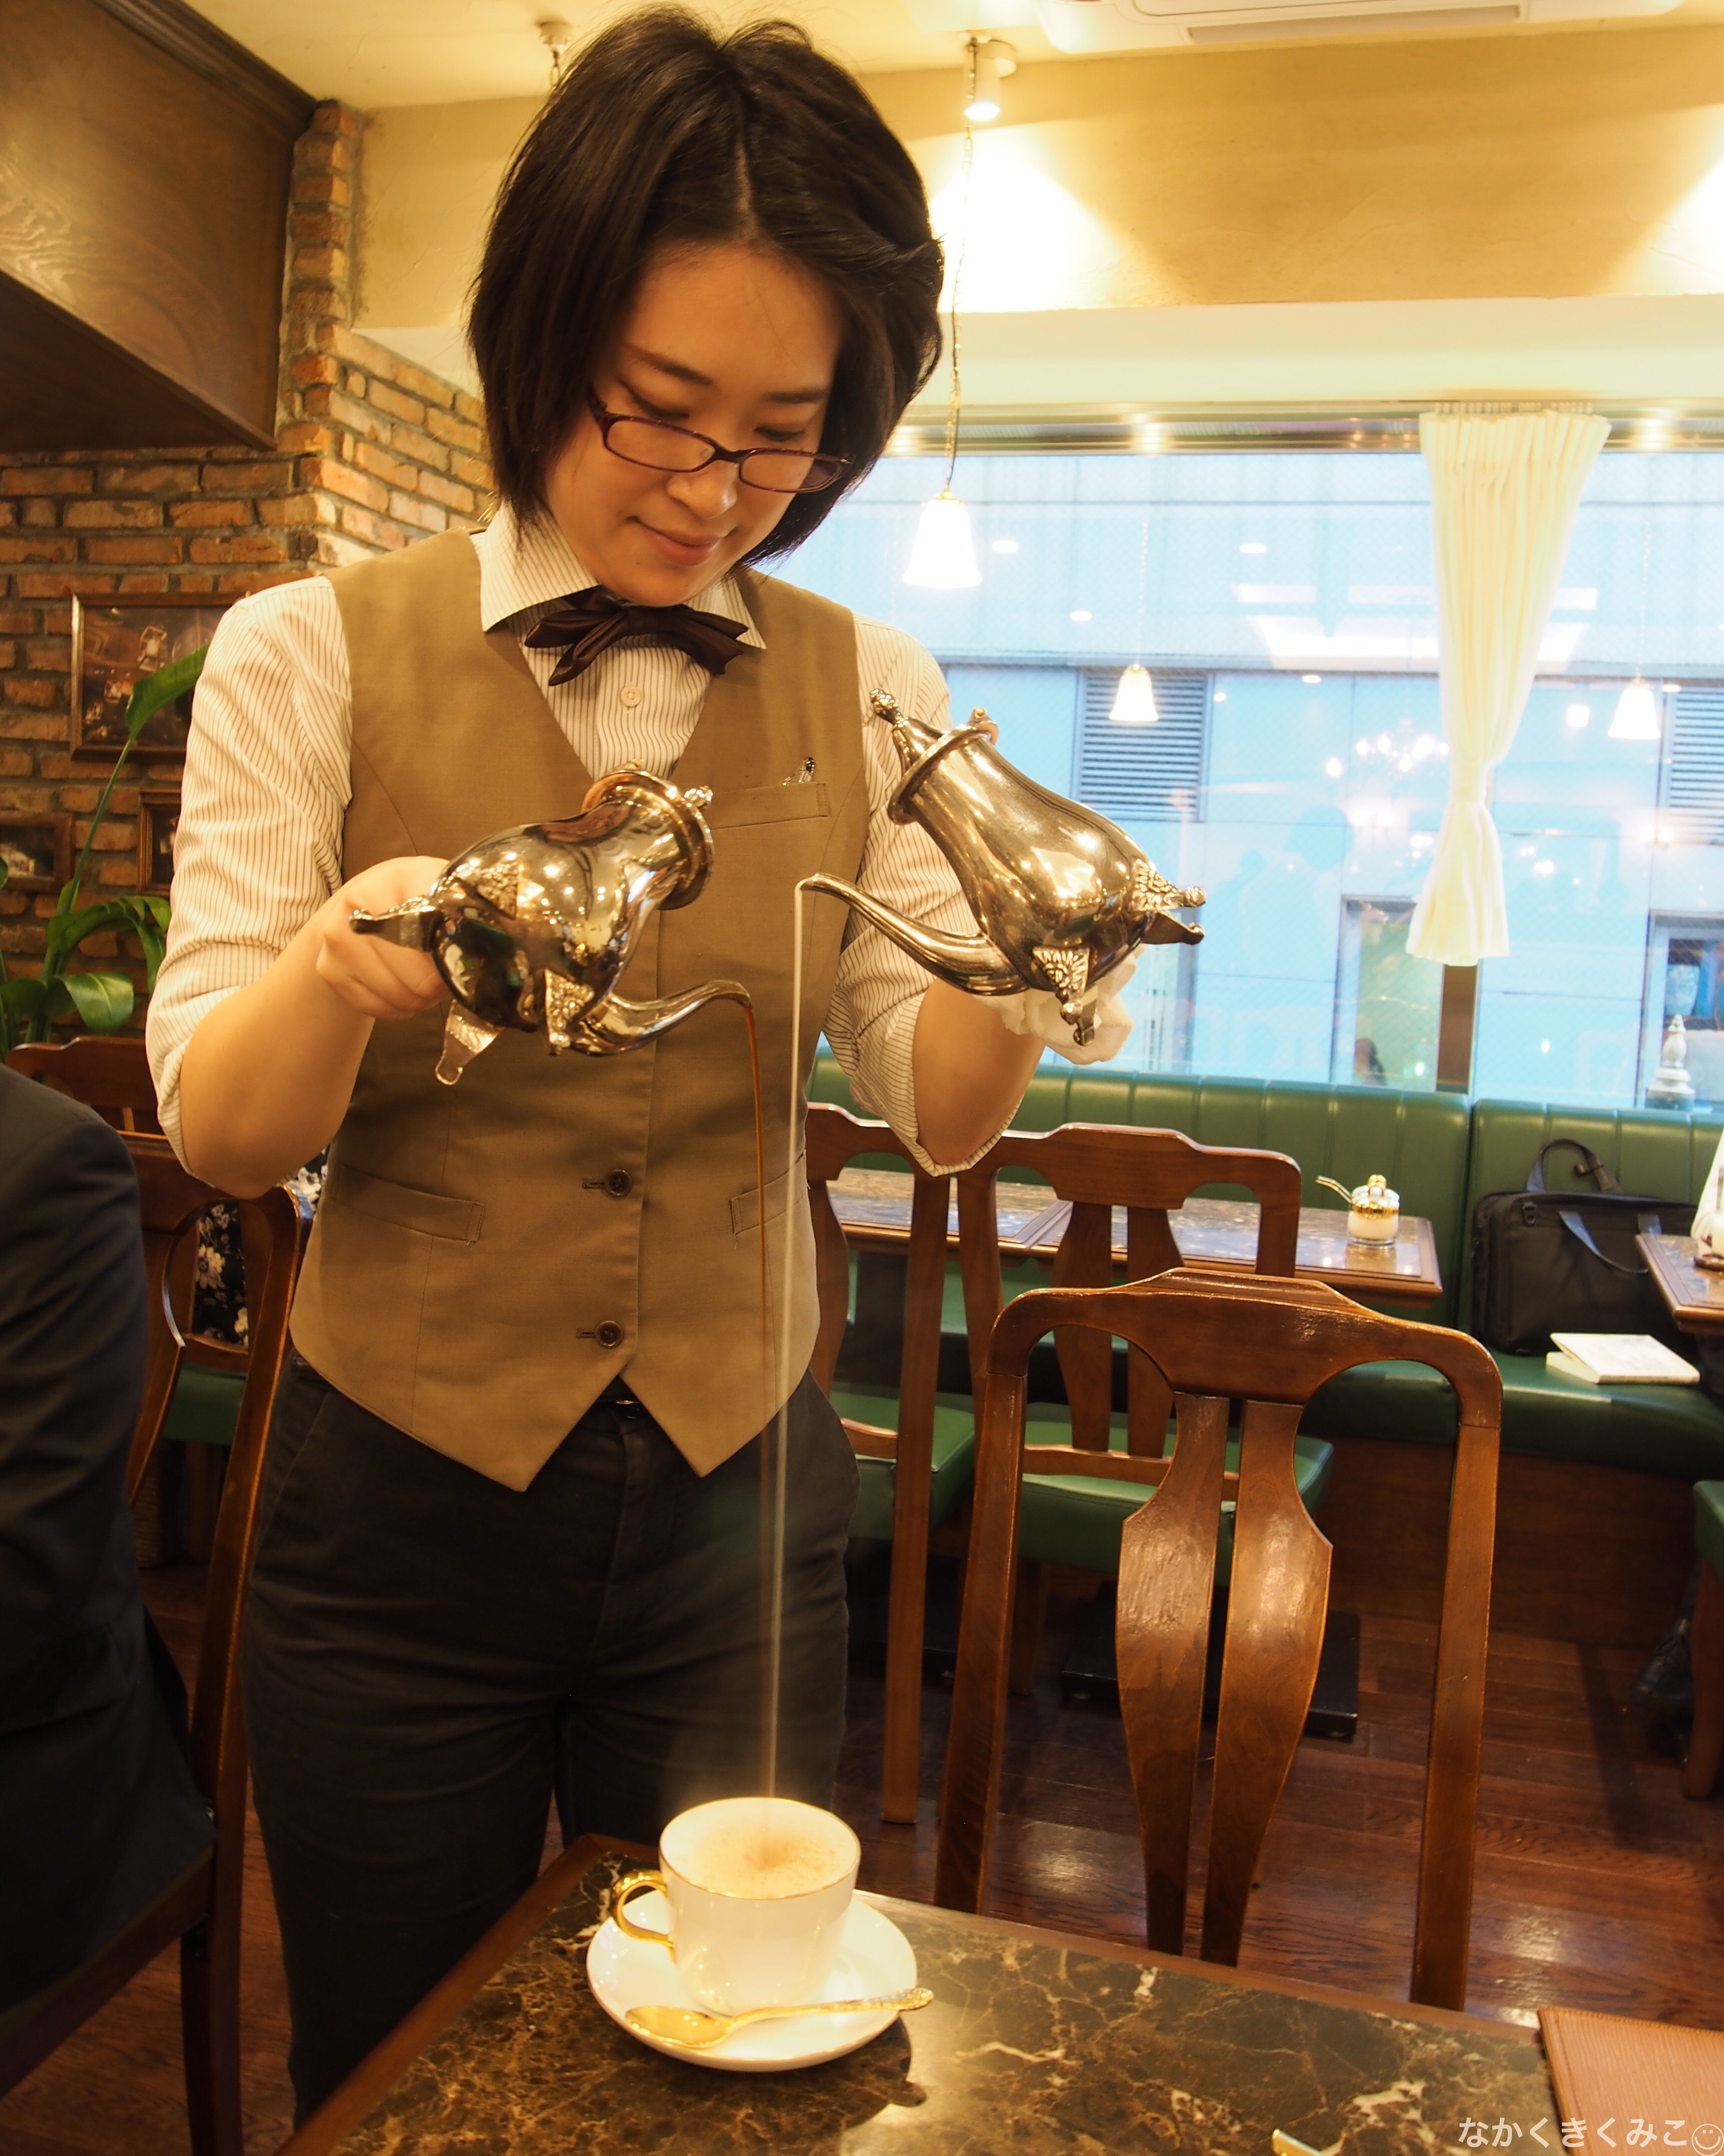 一見の価値あり 老舗の名物カフェオレ 珈琲貴族エジンバラ 新宿三丁目 東京カフェを巡る 小さな旅